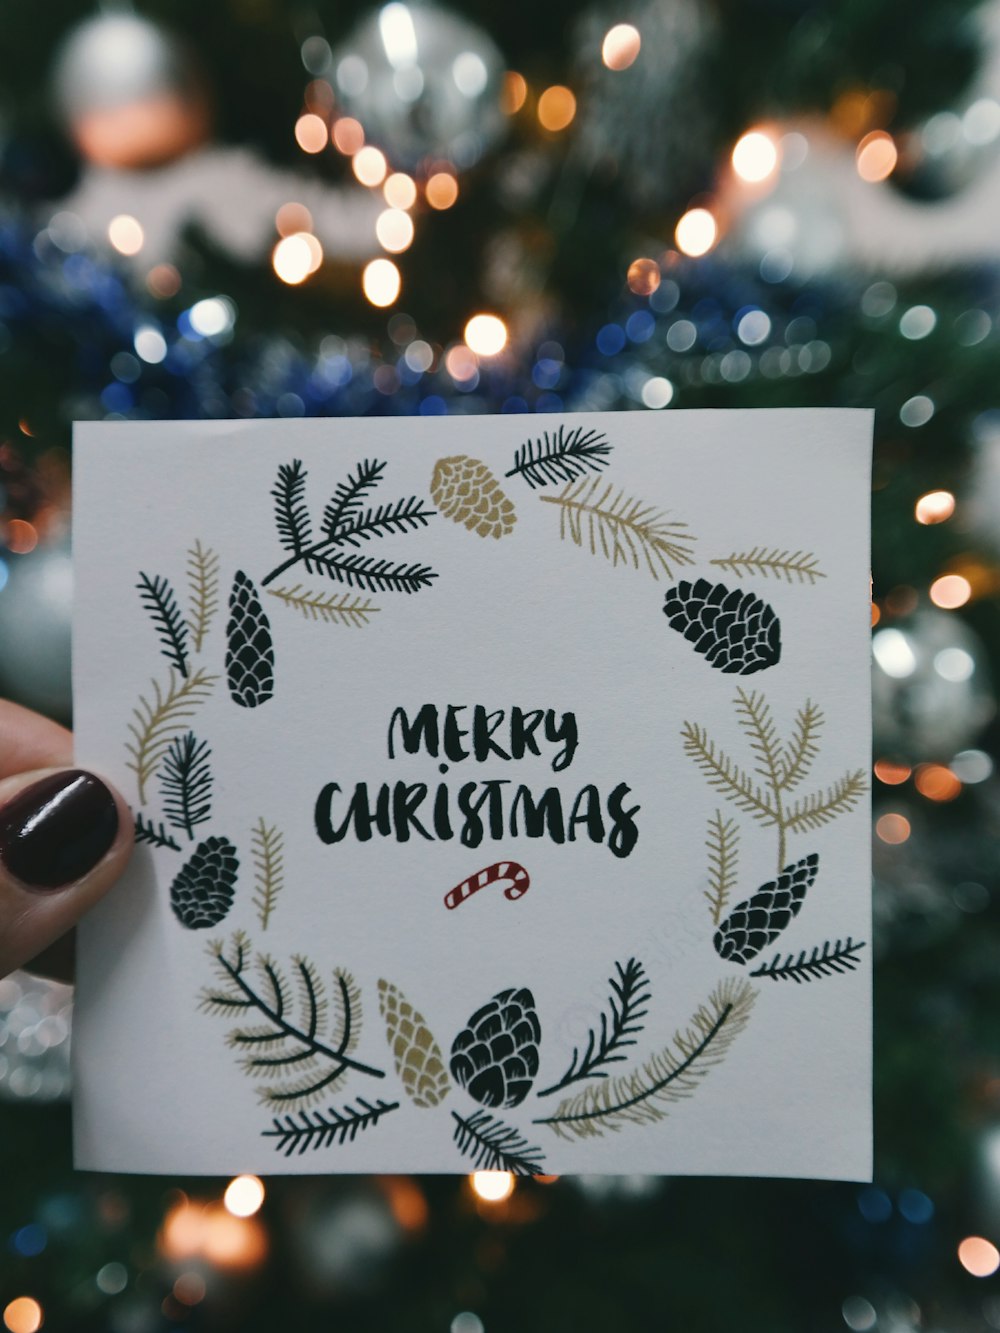 「メリークリスマス」と書かれた紙にリースが飾られ、クリスマスツリーの前に掲げられています。